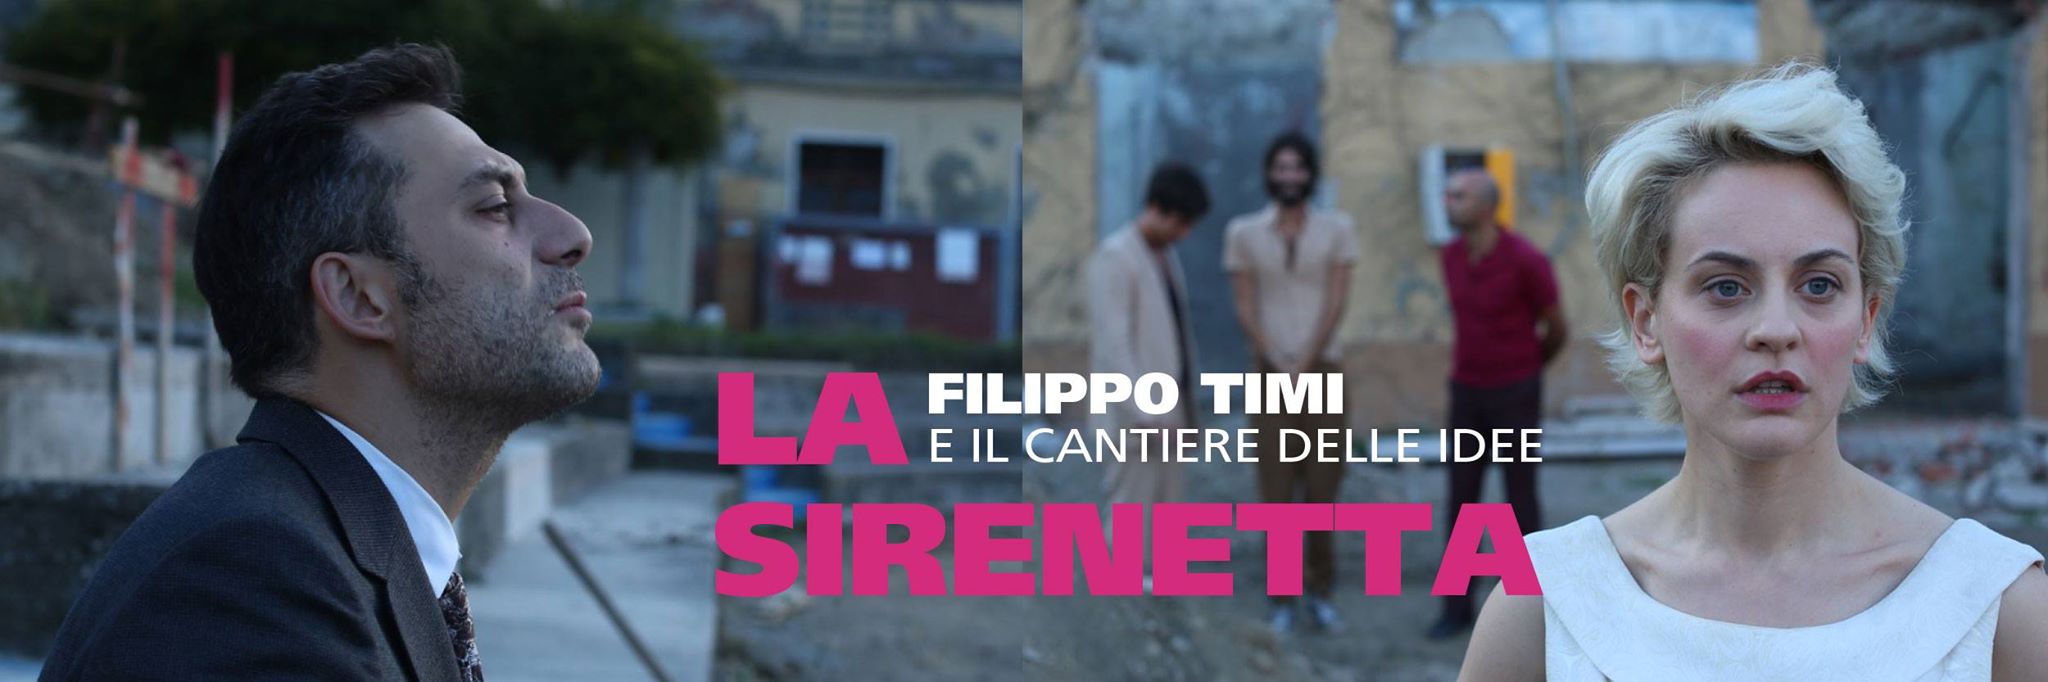 La Sirenetta (2014)